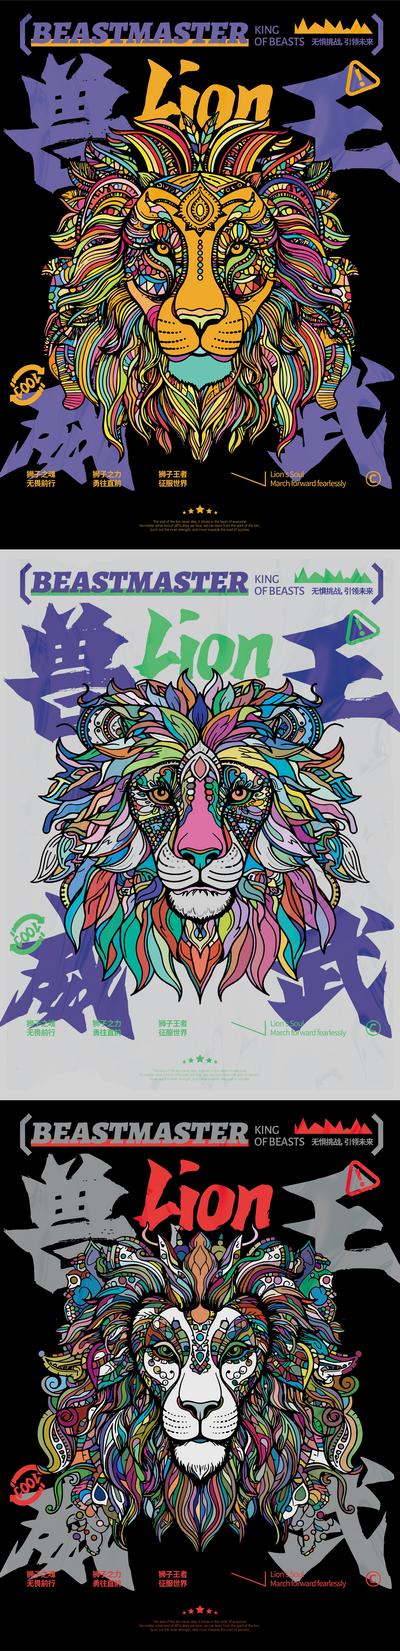 【南门网】广告 海报 插画 潮流 创意 印第安 彩色 色块 挑战 无畏 威武 兽王 狮子头 狮子 动物 野兽 招贴